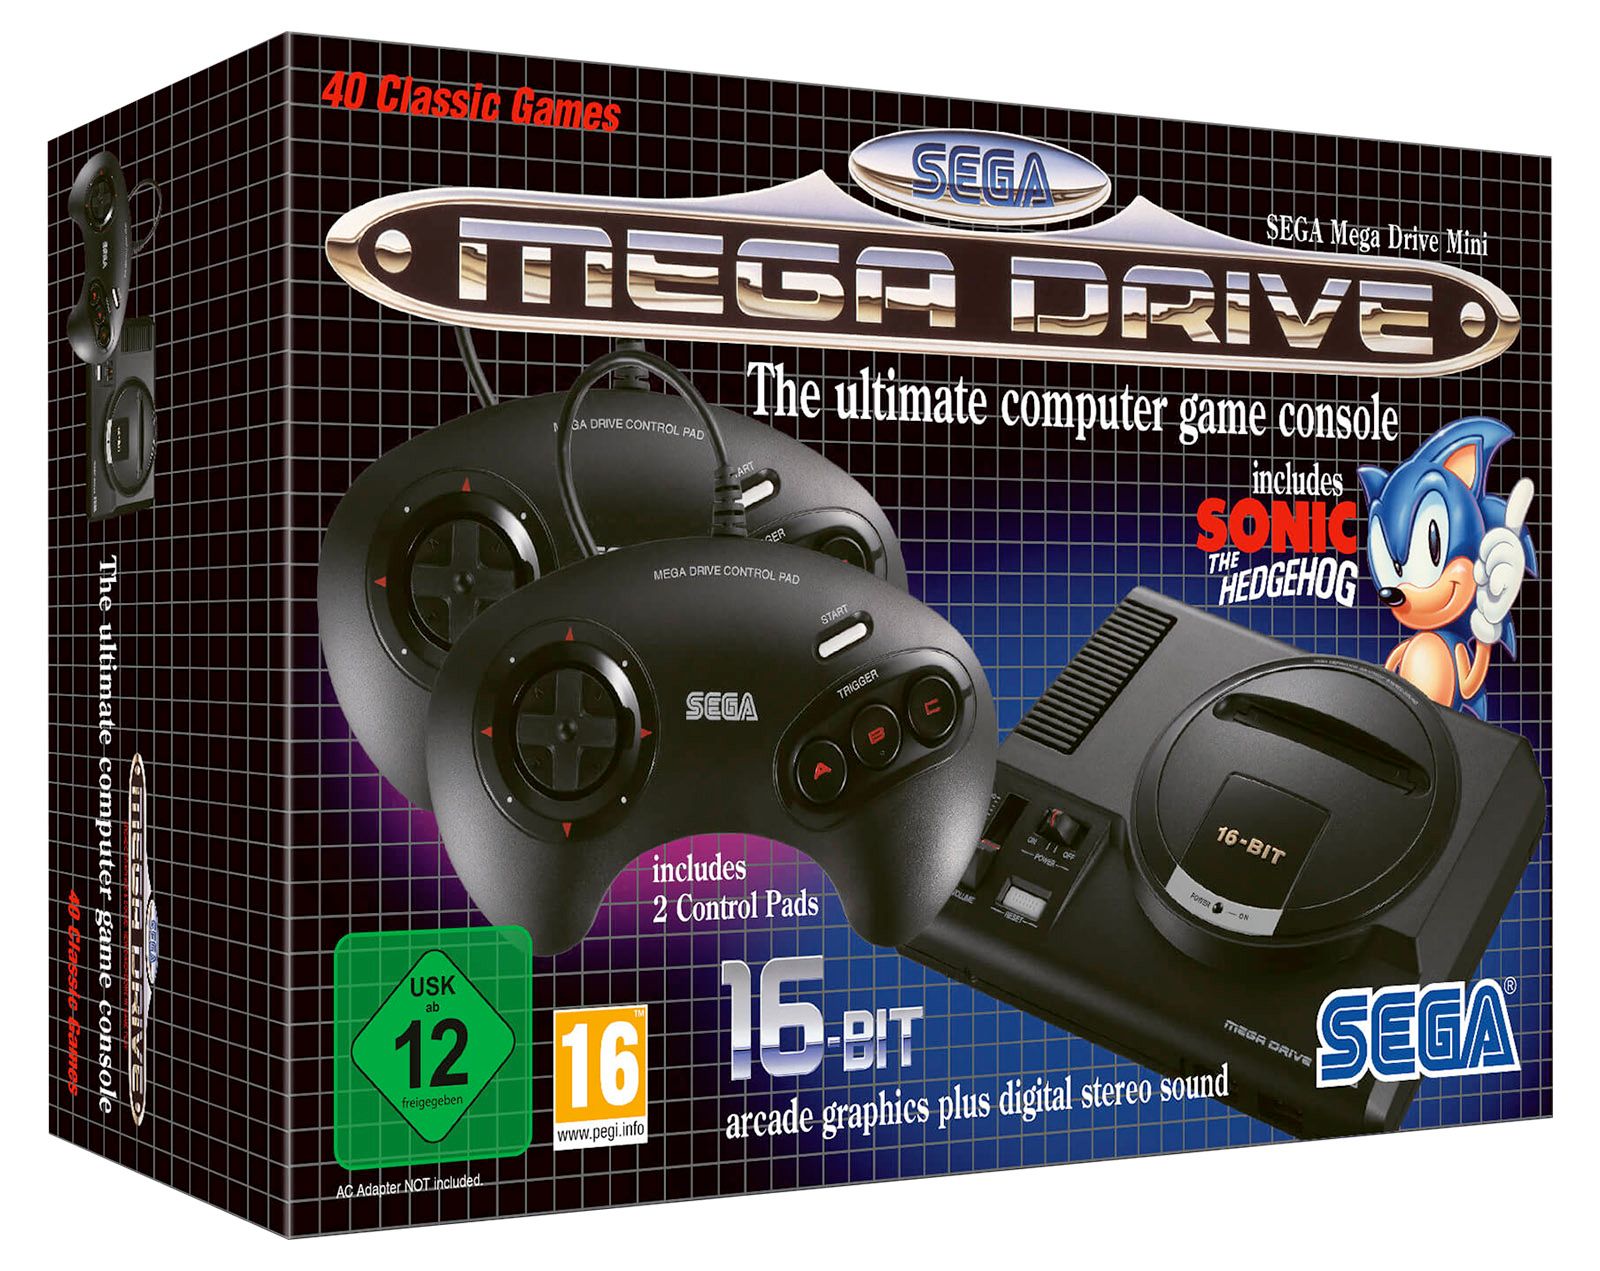 Sega Mega Drive Mini image 1